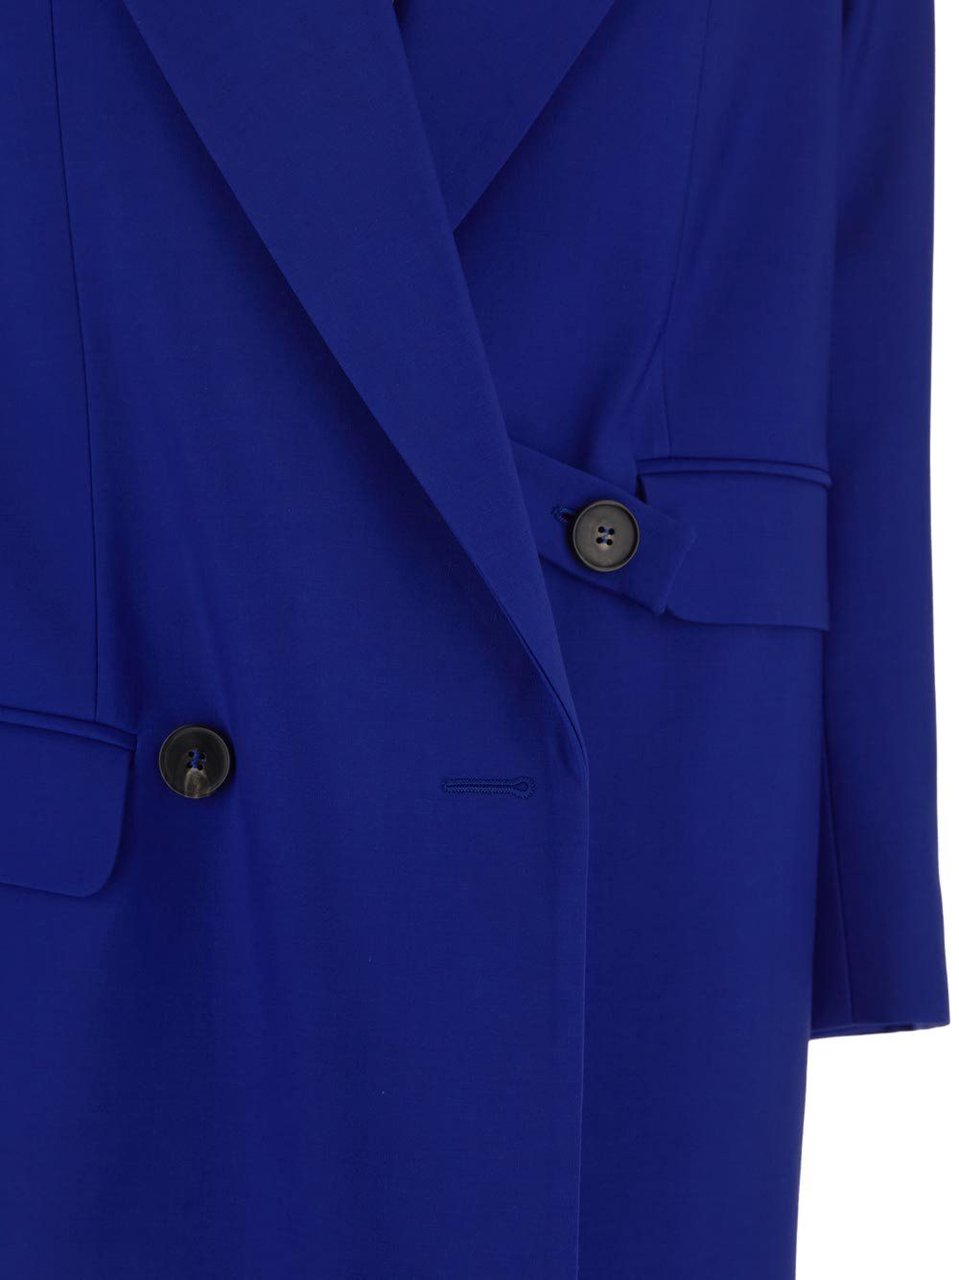 Alexander McQueen Long Coat Blauw